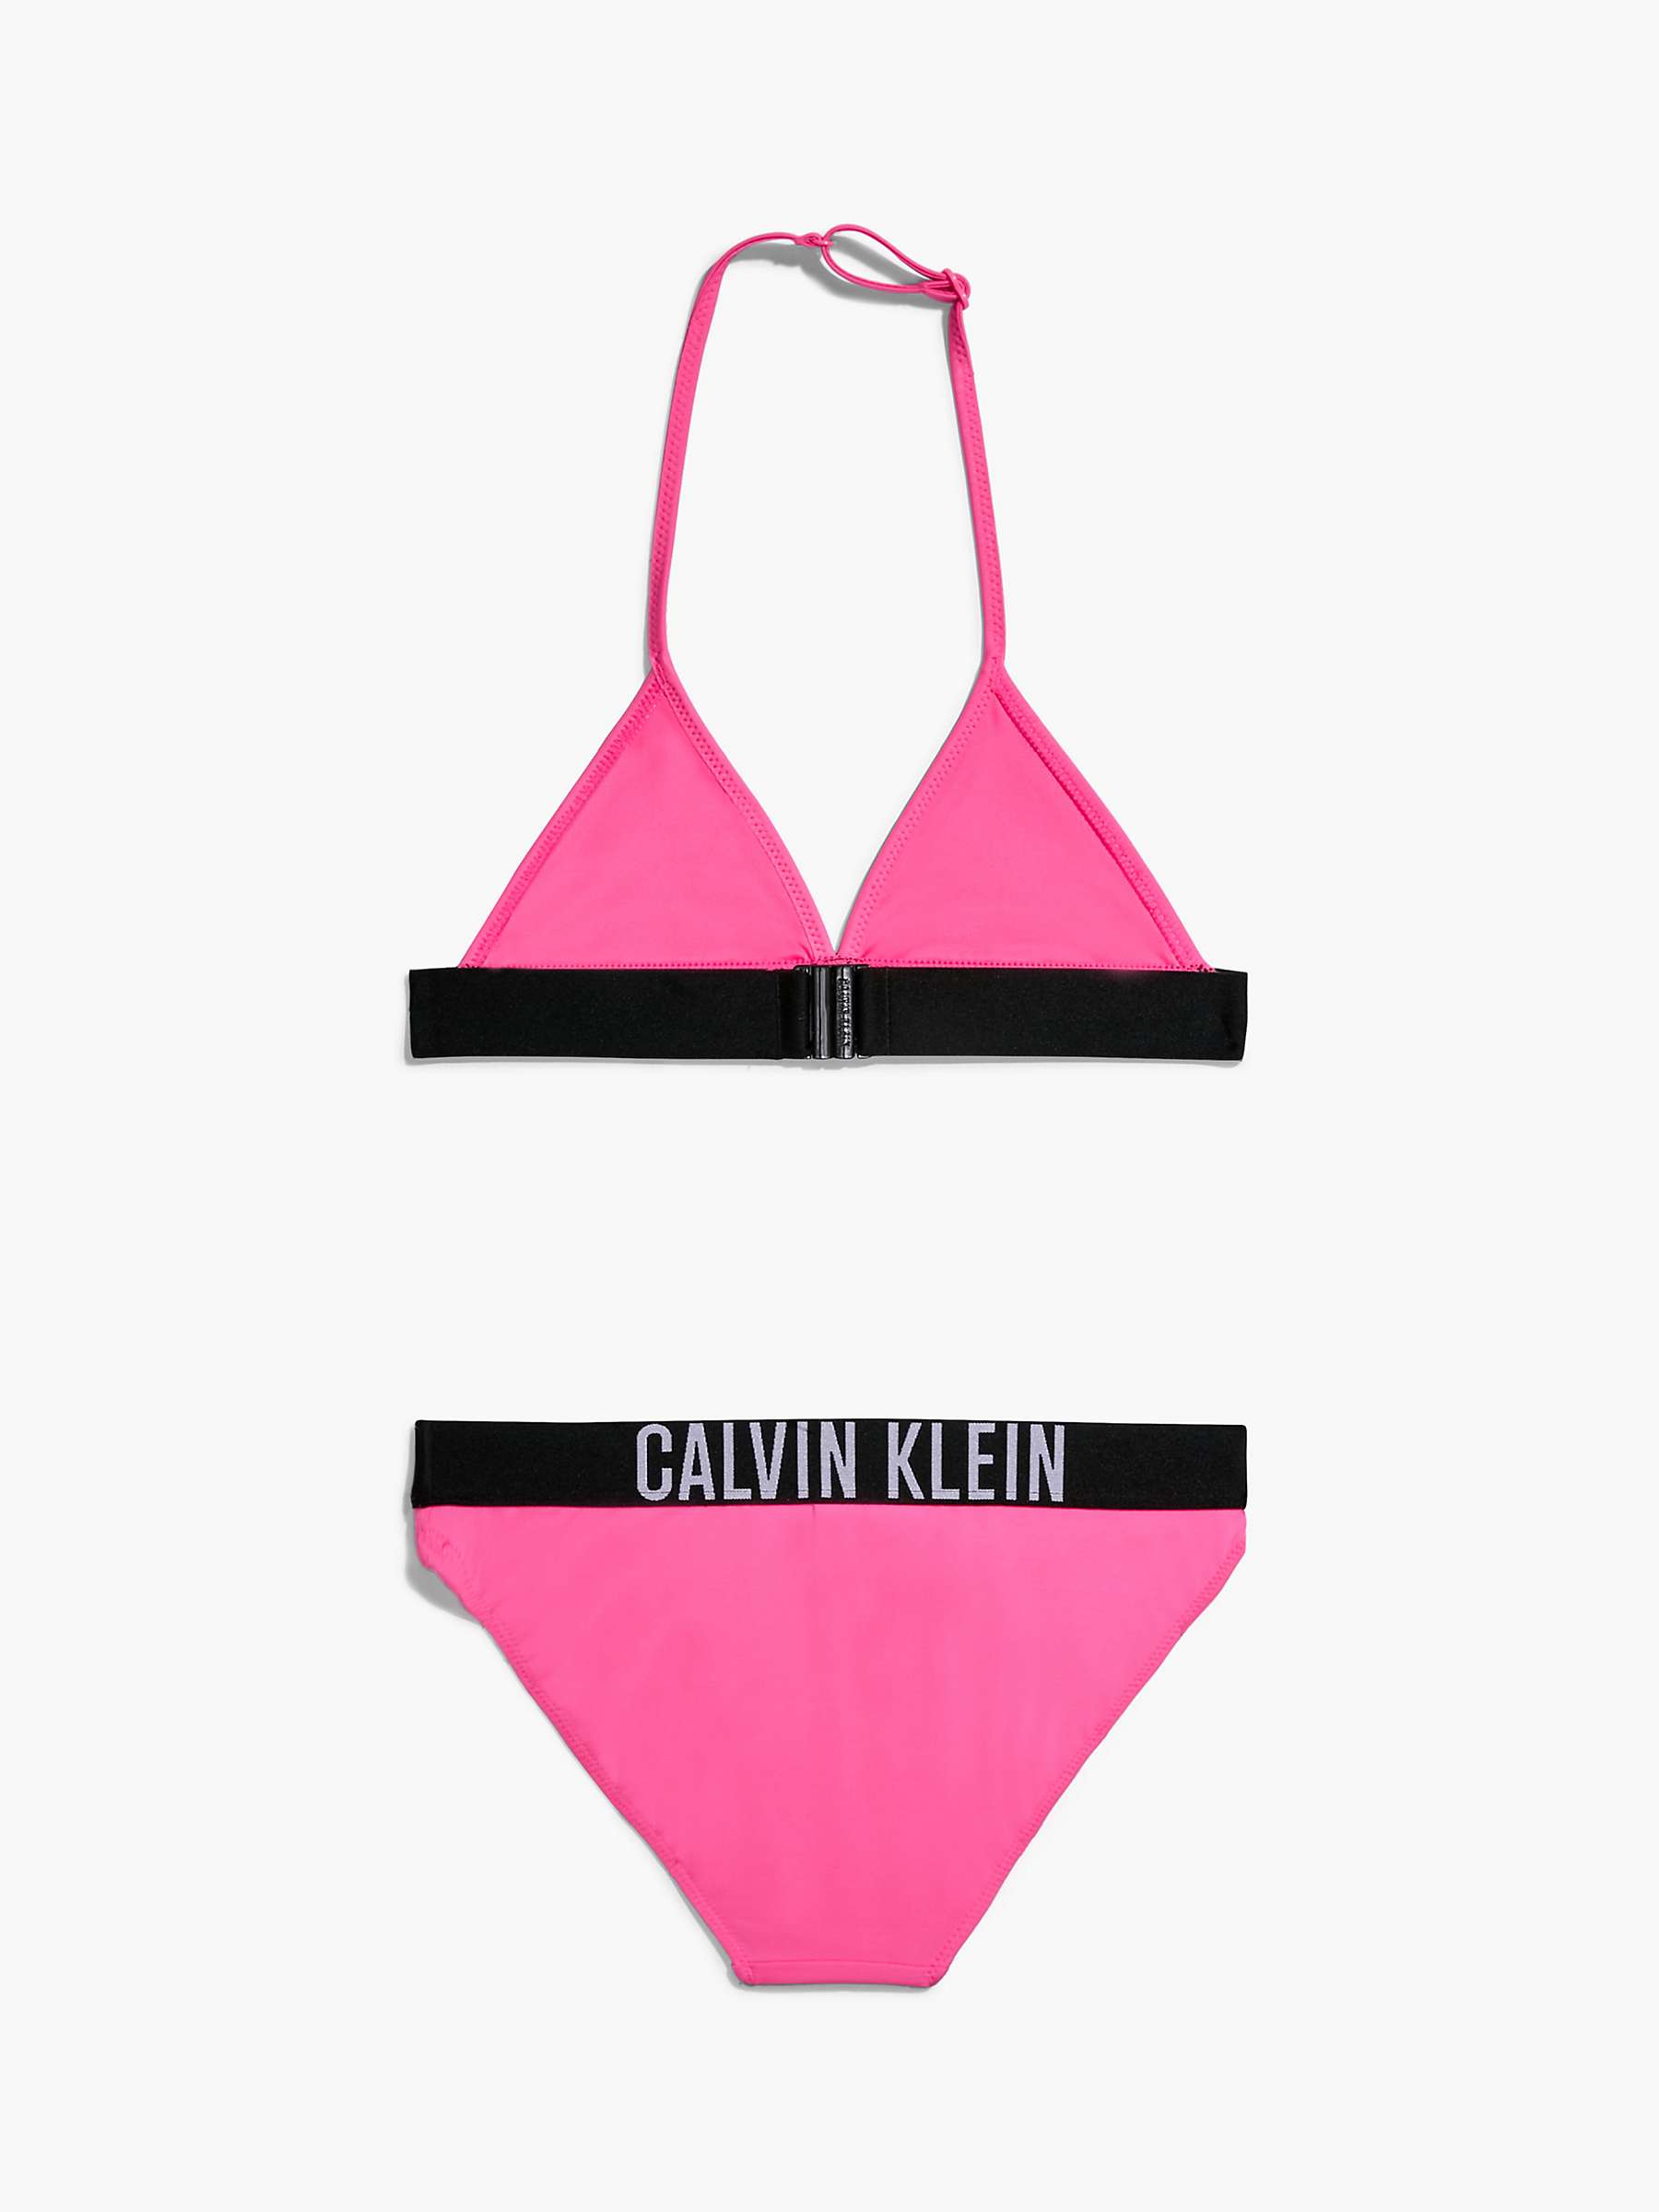 Calvin Klein Kids' Triangle Bikini Set, Pink at John Lewis & Partners